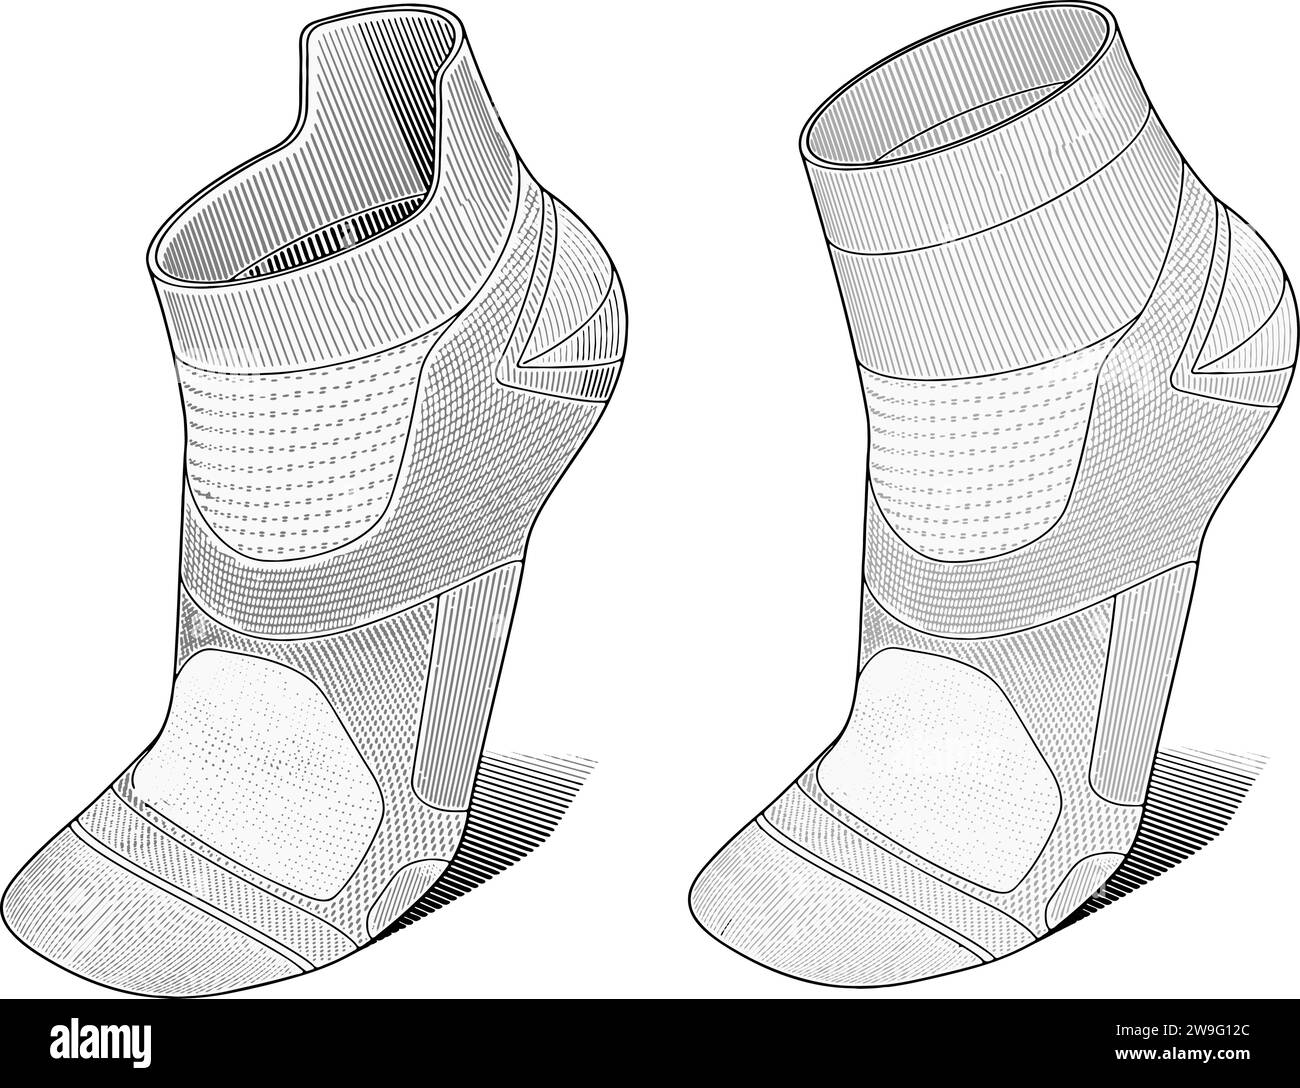 Illustration vectorielle de chaussettes en tricot athlétique. Ceci est une illustration vectorielle détaillée de chaussettes en tricot athlétique de haute performance. Illustration de Vecteur